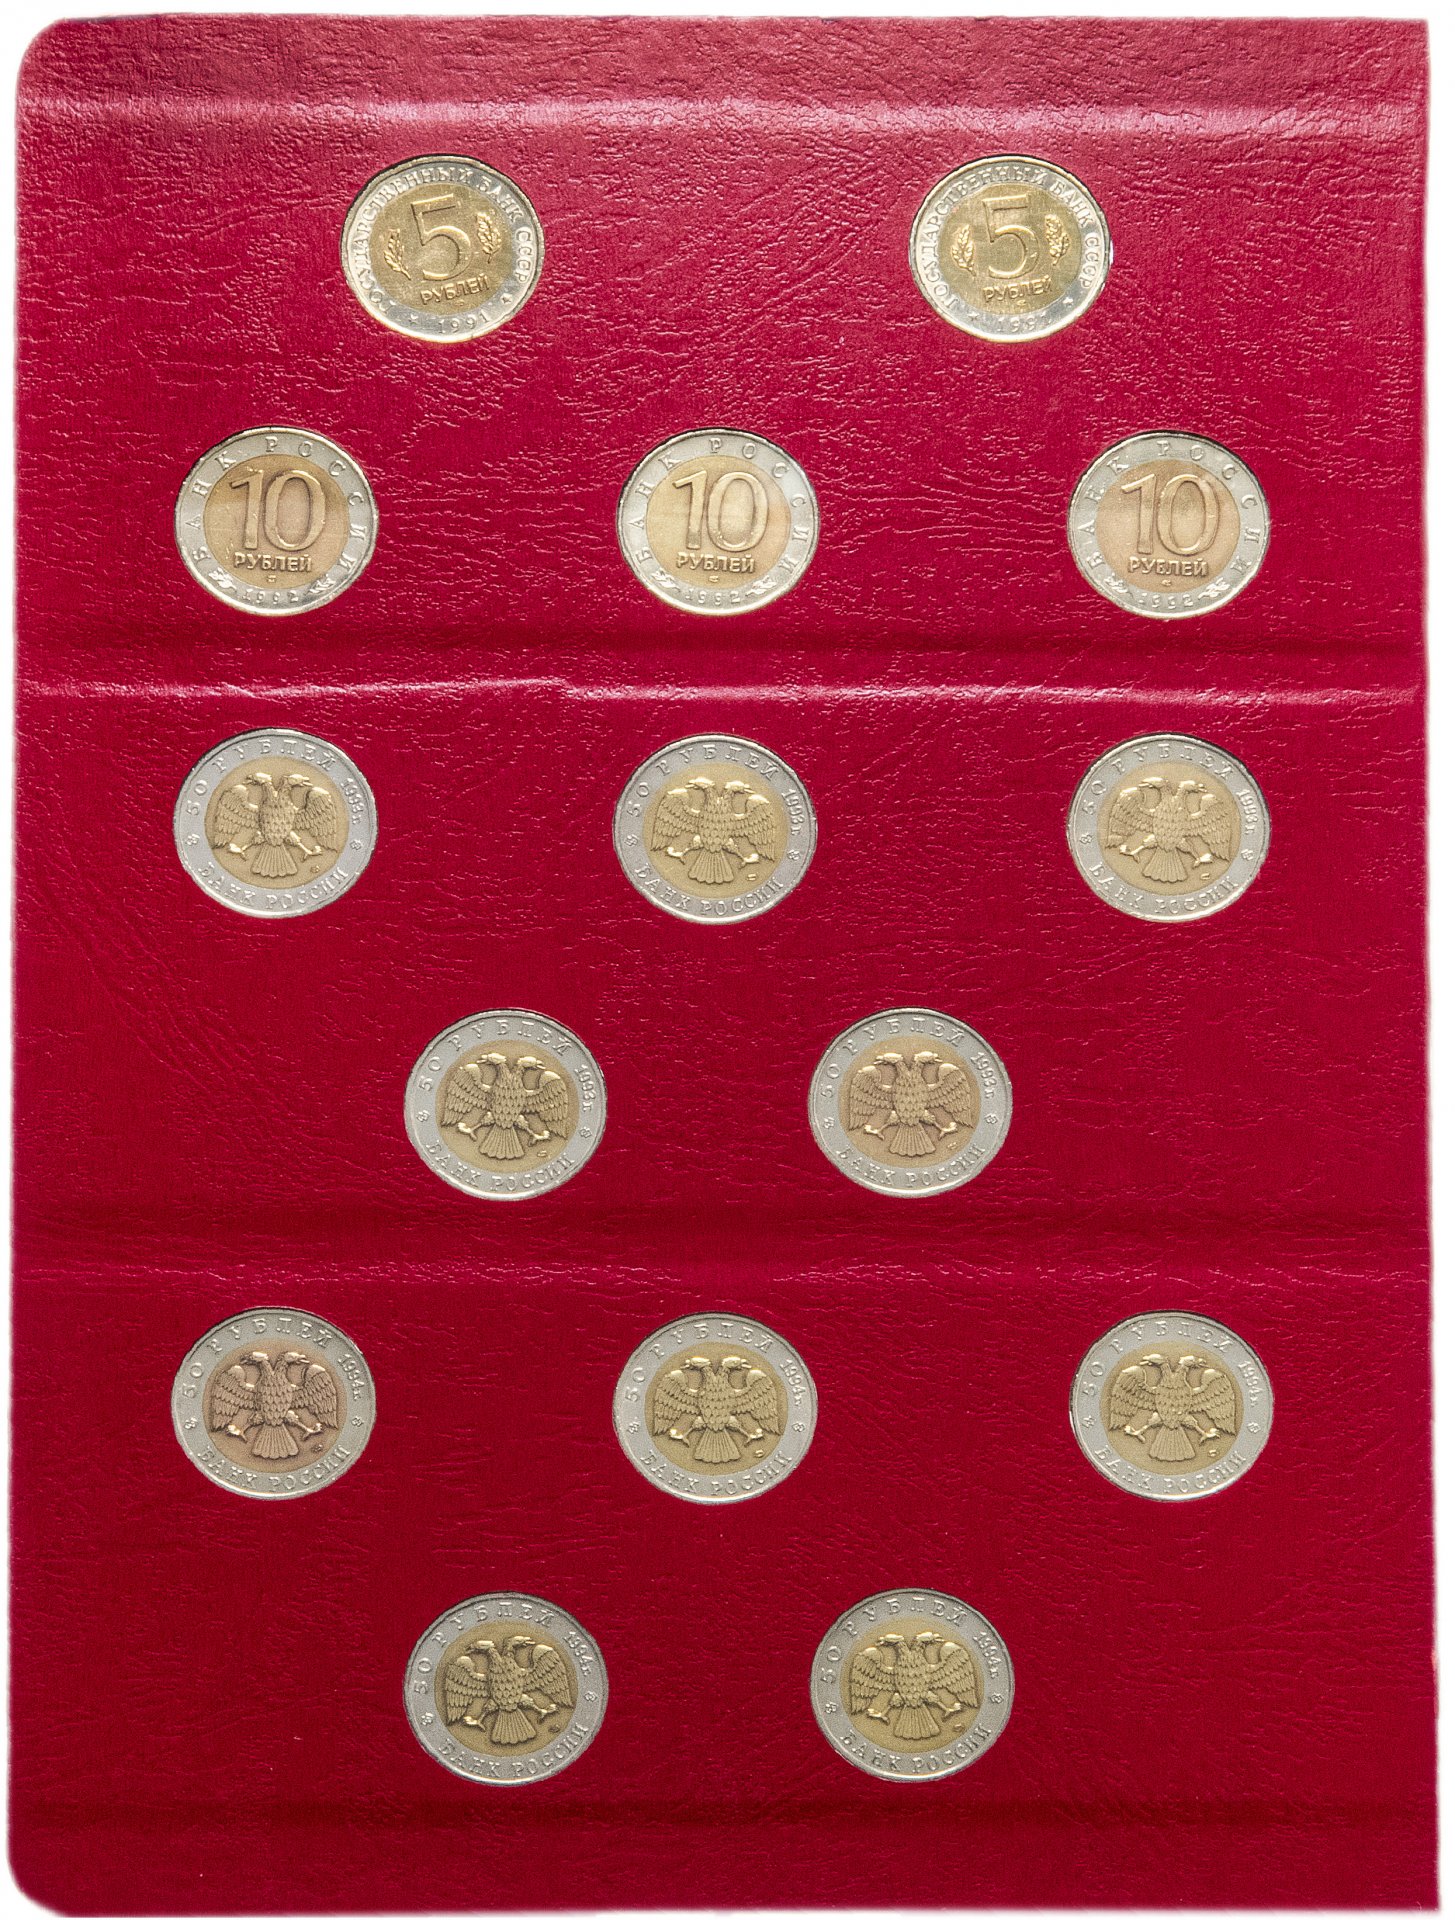 Монеты красная книга 1991